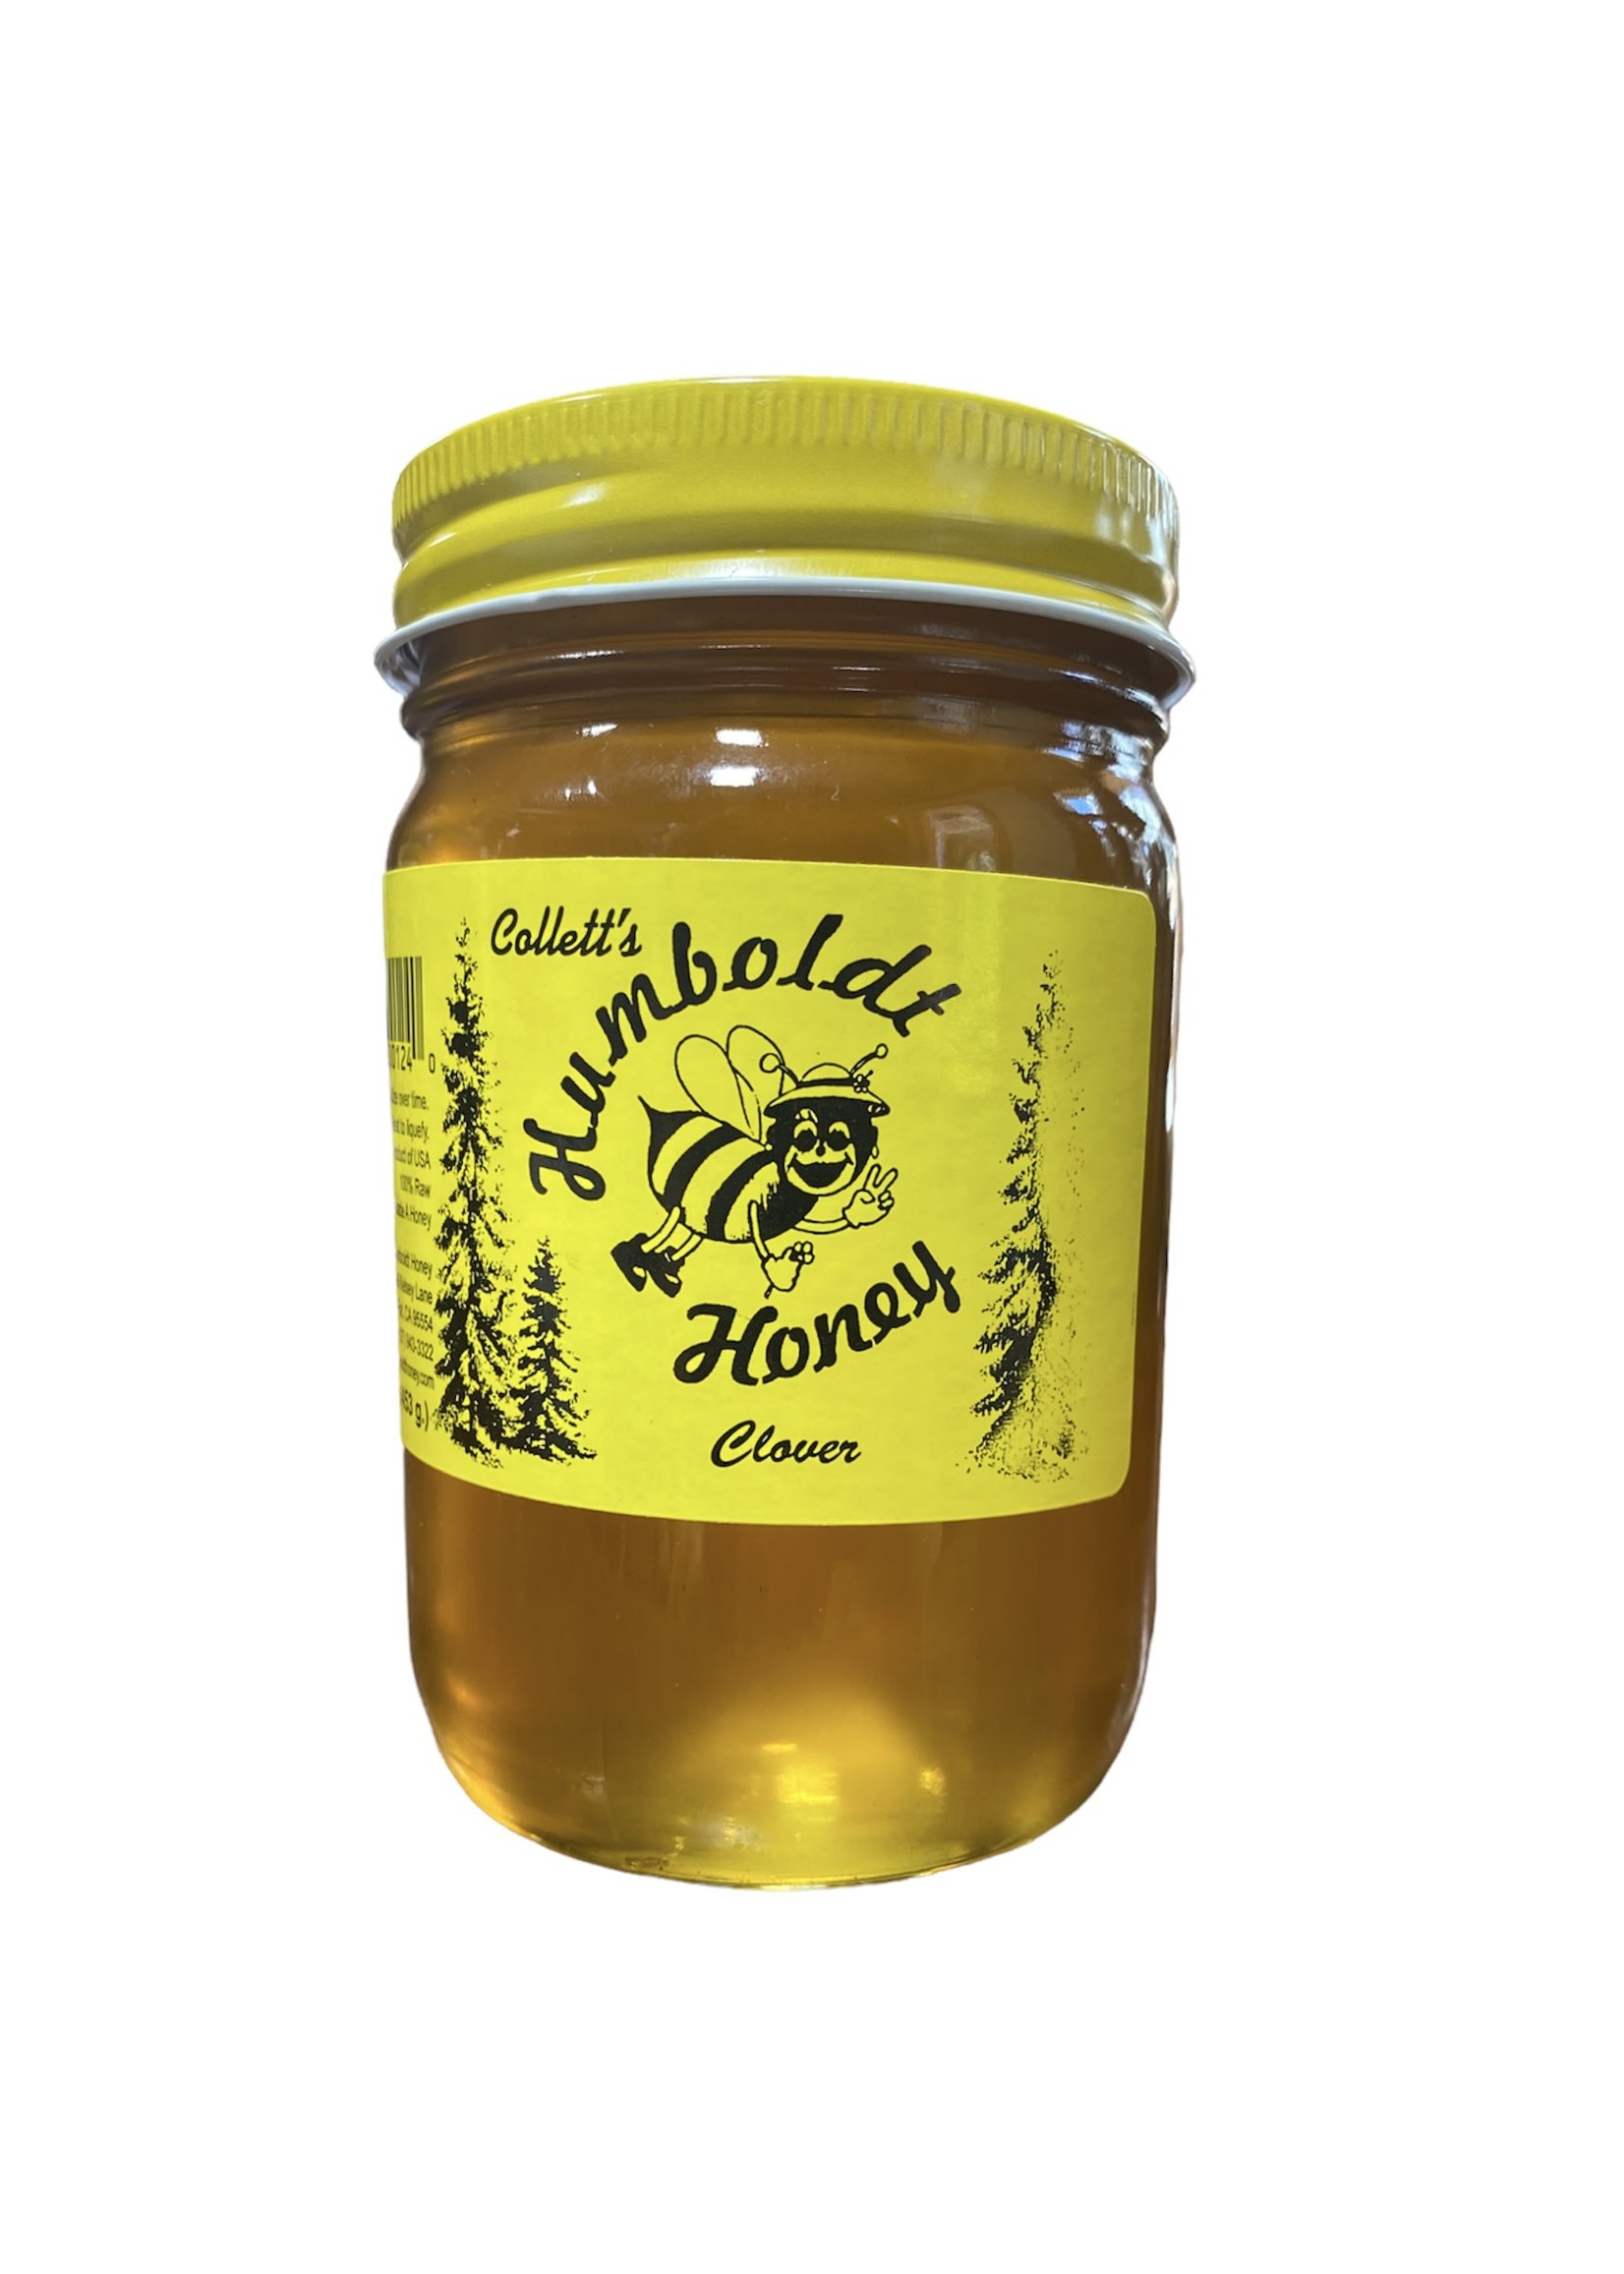 Humboldt Honey